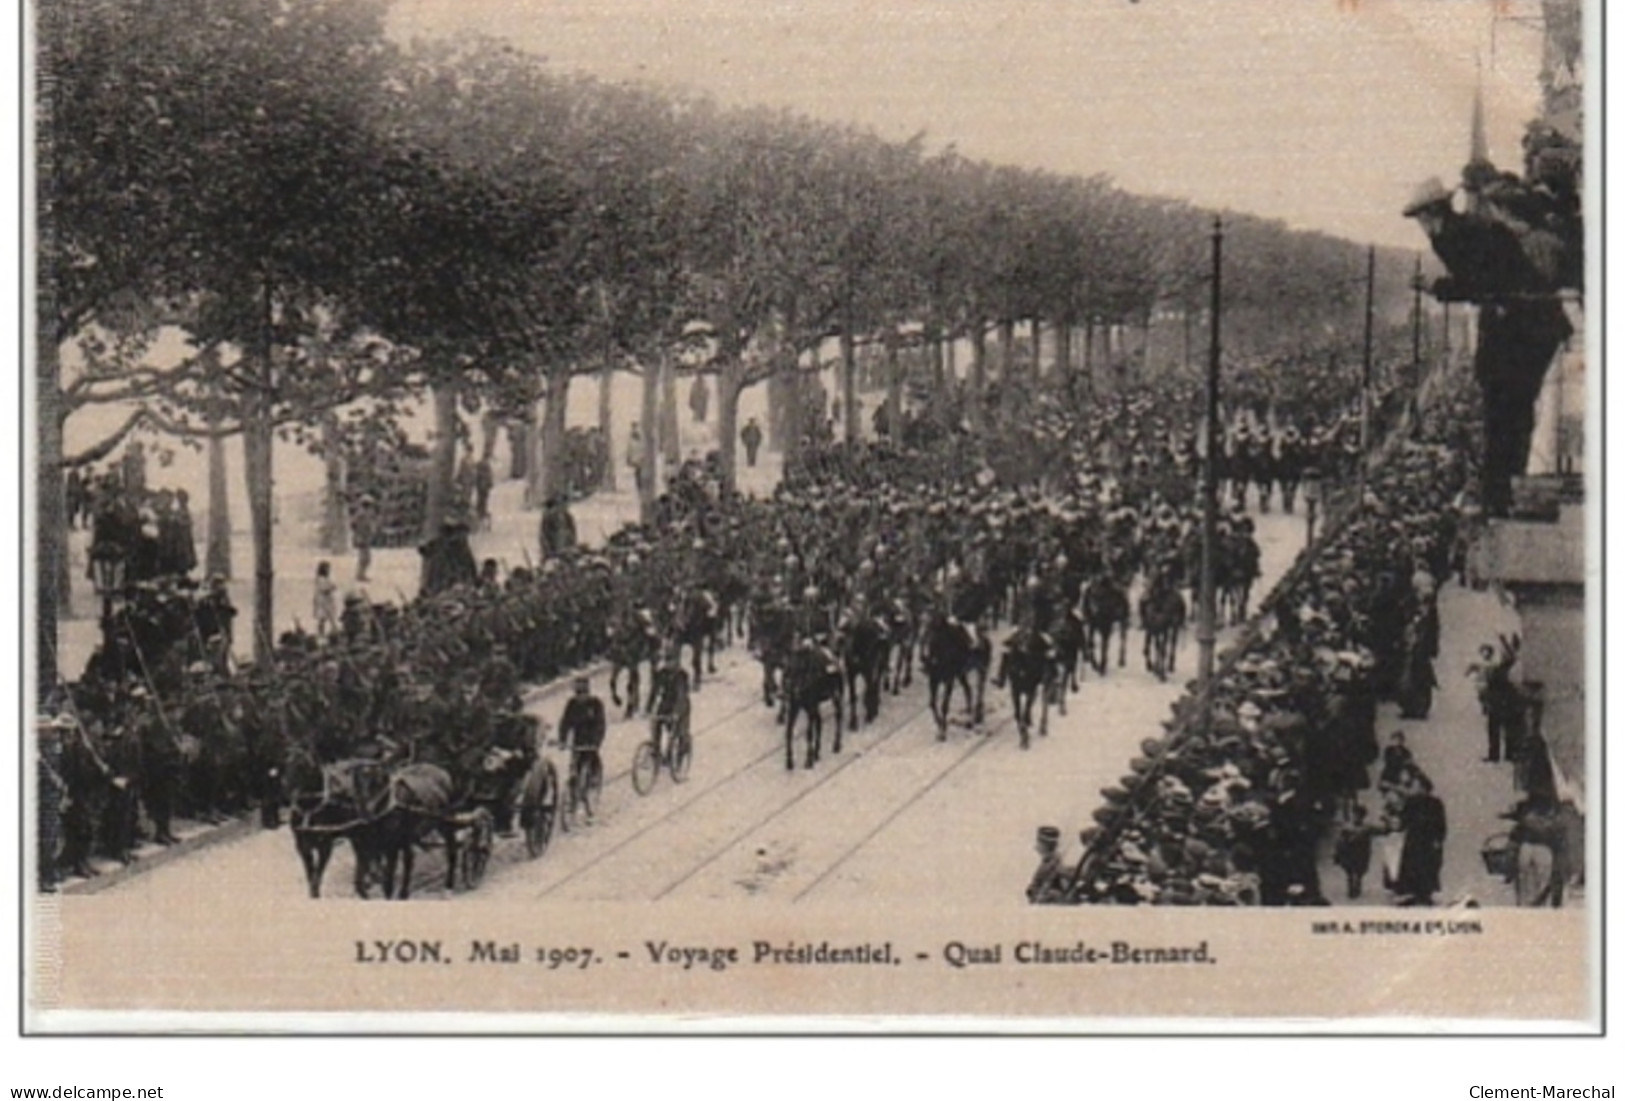 LYON : mai 1907 - voyage présidentiel (Lot de 18 cartes postales anciennes sur soie) - très bon état